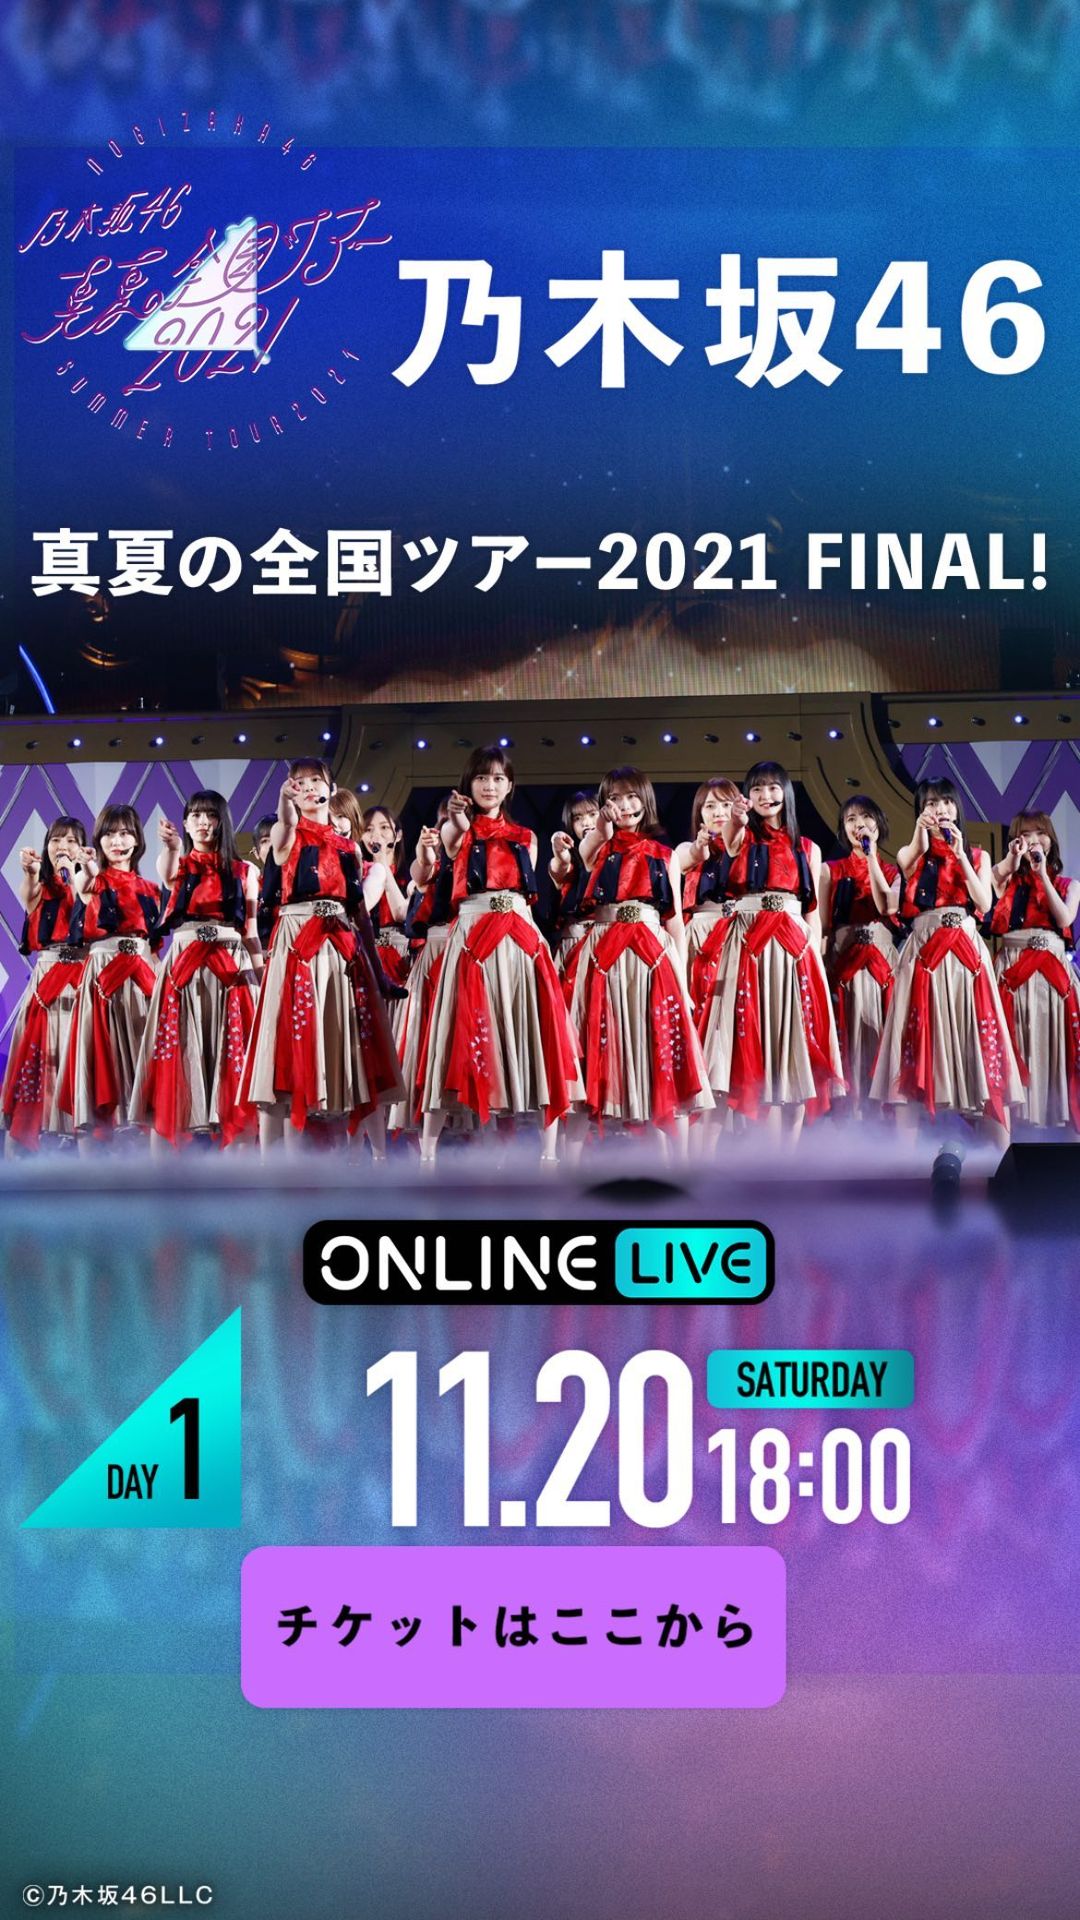 乃木坂46真夏の全国ツアー2021FINAL!配信ライブ